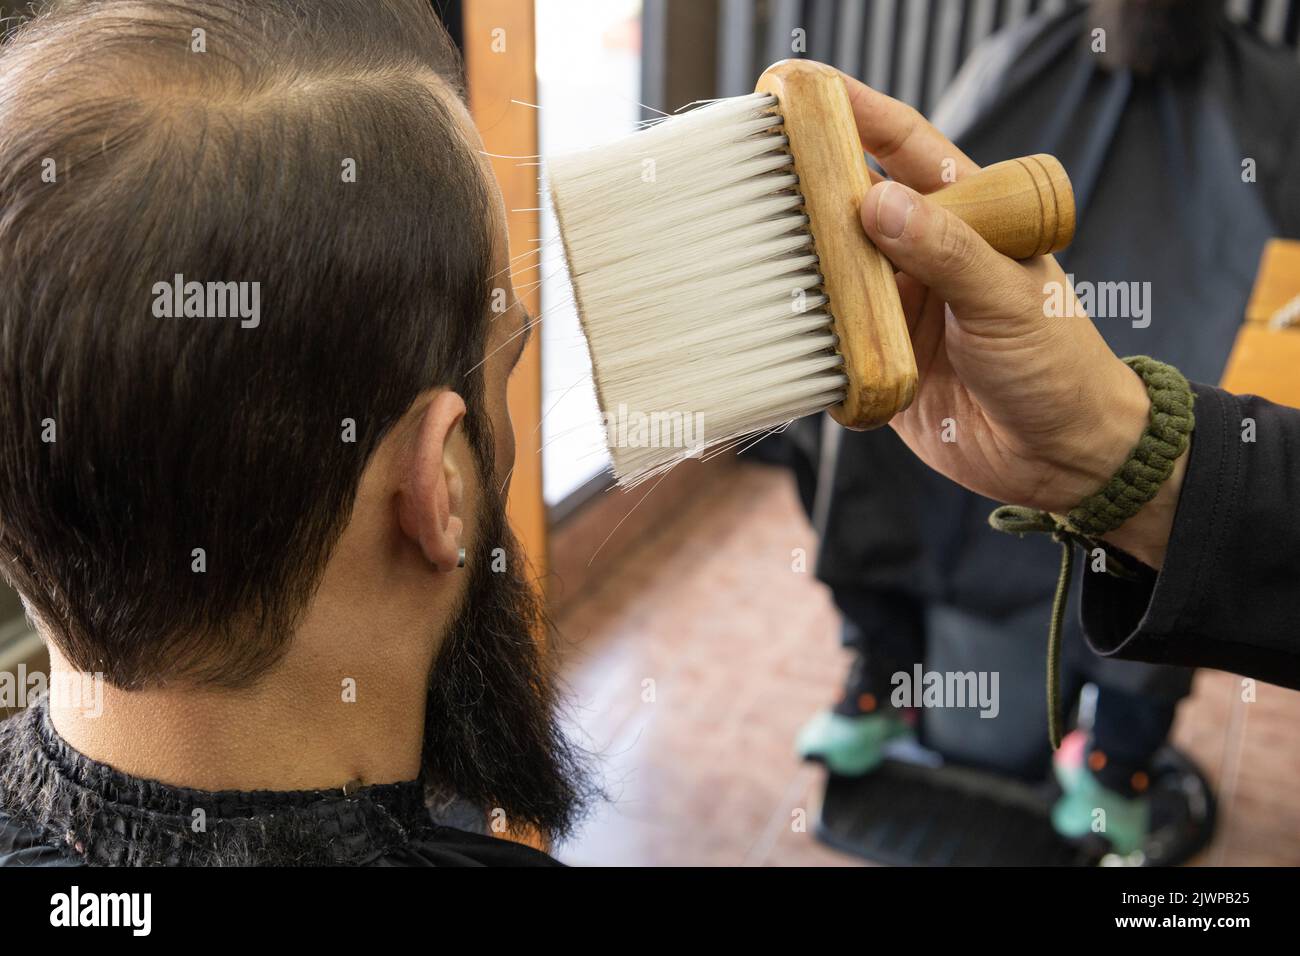 Interieur eines Friseurshopfes mit einem Kunden mit kurzen Haaren und einem sitzenden Bart, Service, während ein Stylist einen Pinsel hält, Werkzeuge für die persönliche Pflege Stockfoto